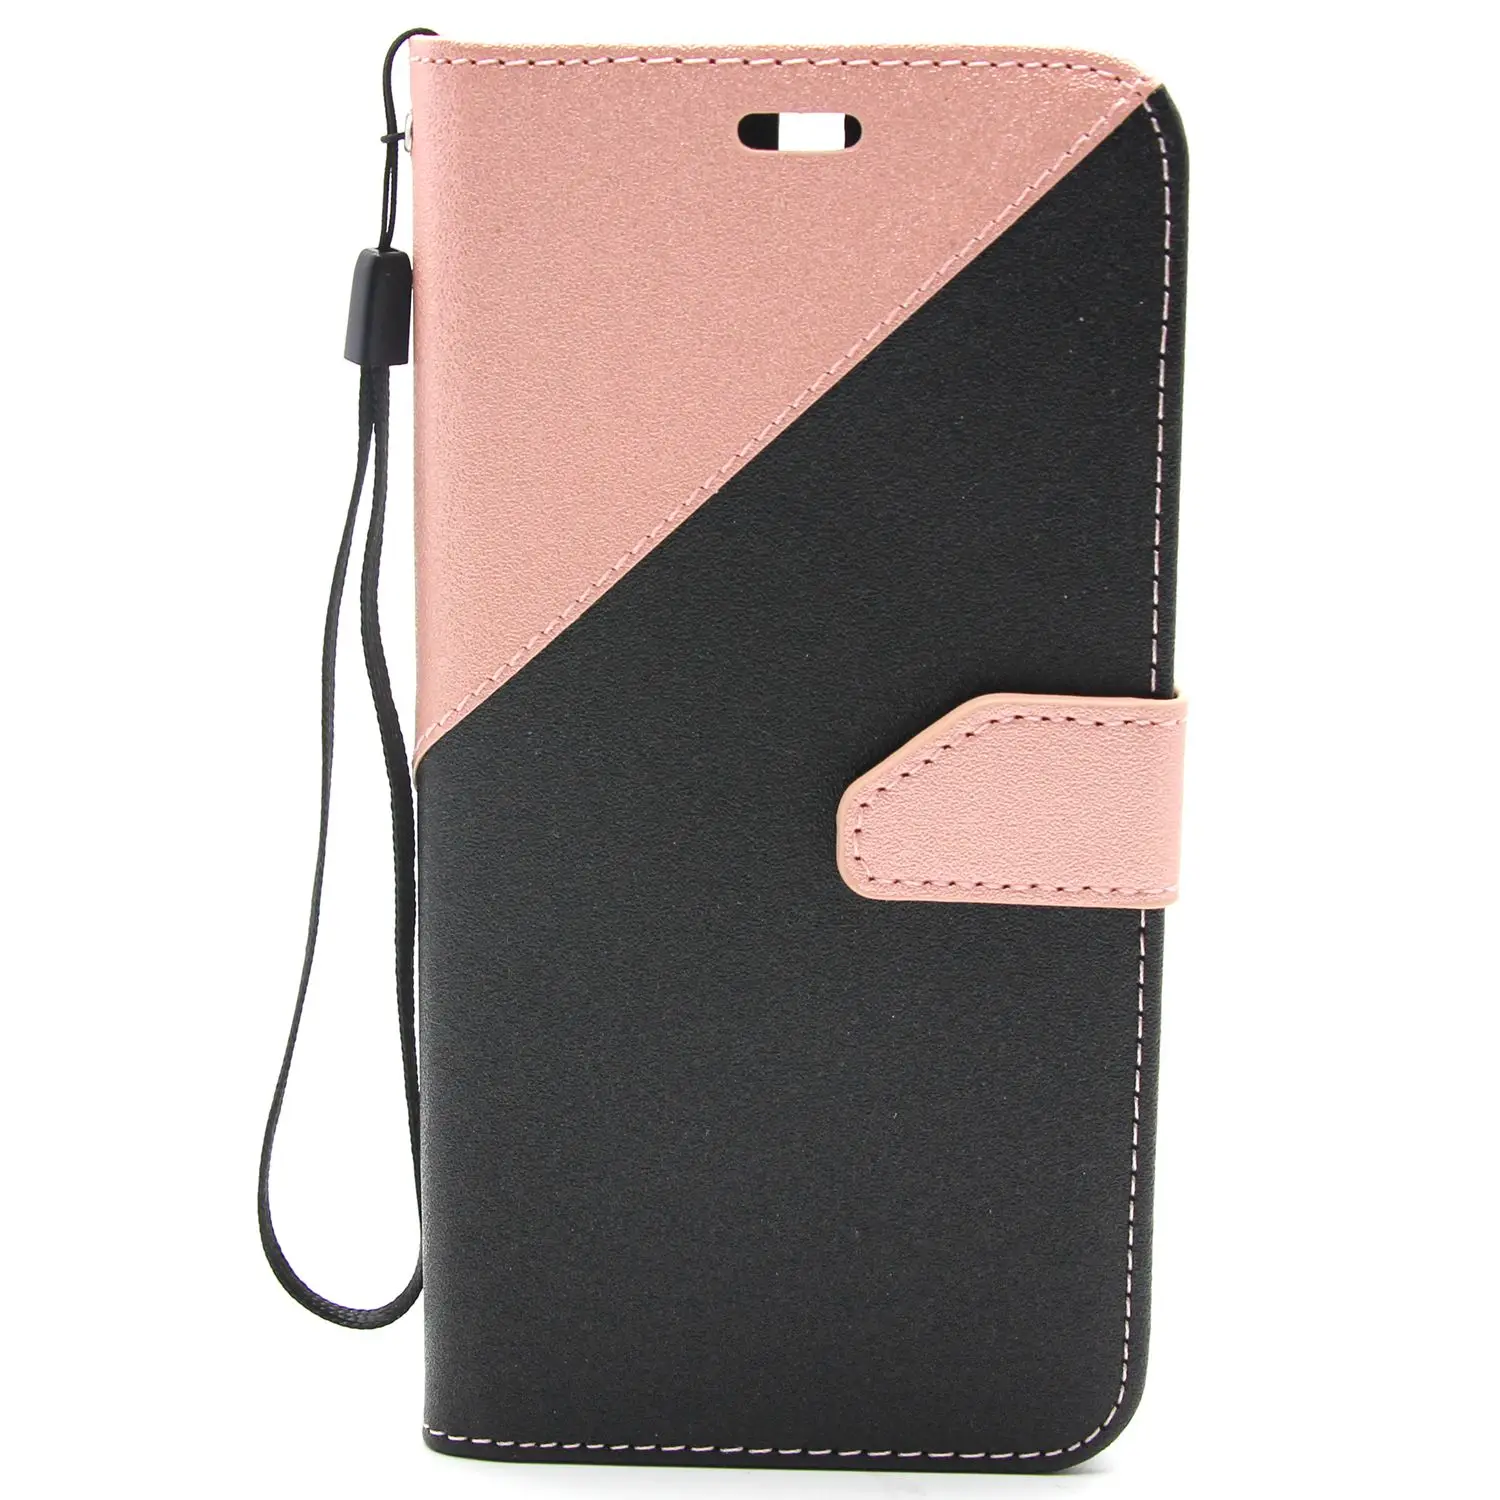 Mooshion роскошный Флип кожаный чехол плюс Бумажник Стенд защитный чехол для телефона для huawei Honor 6X huawei GR5 сумка держатель - Цвет: Розовый